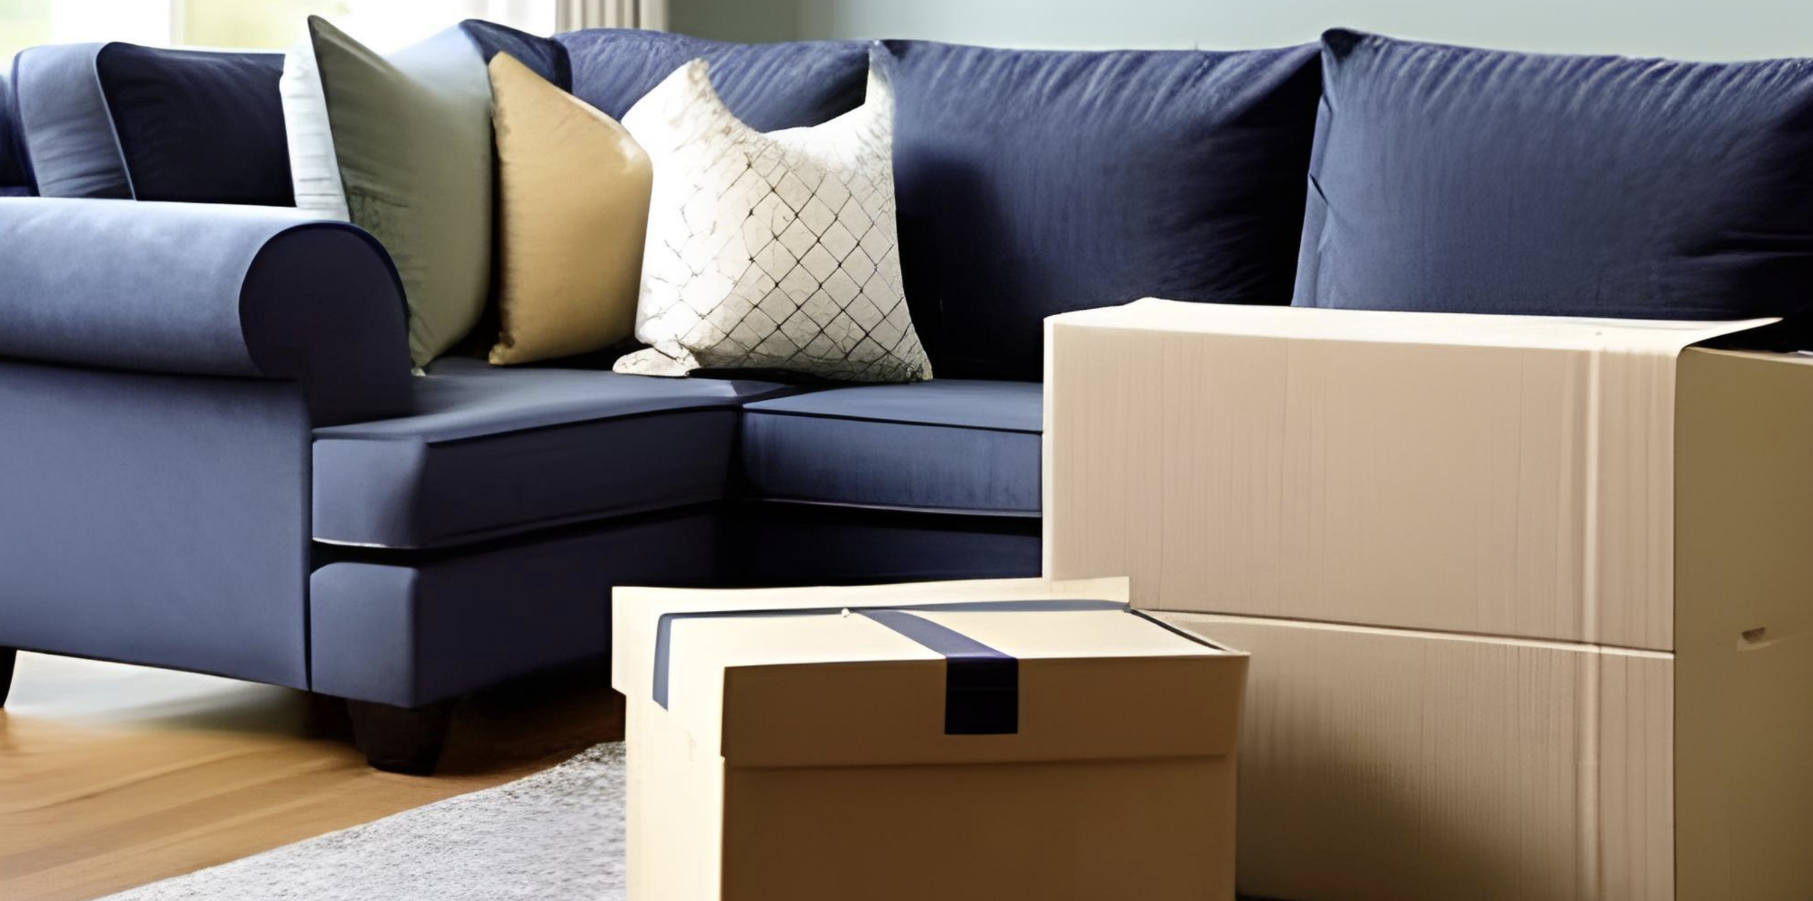 Prepare Furniture For Move